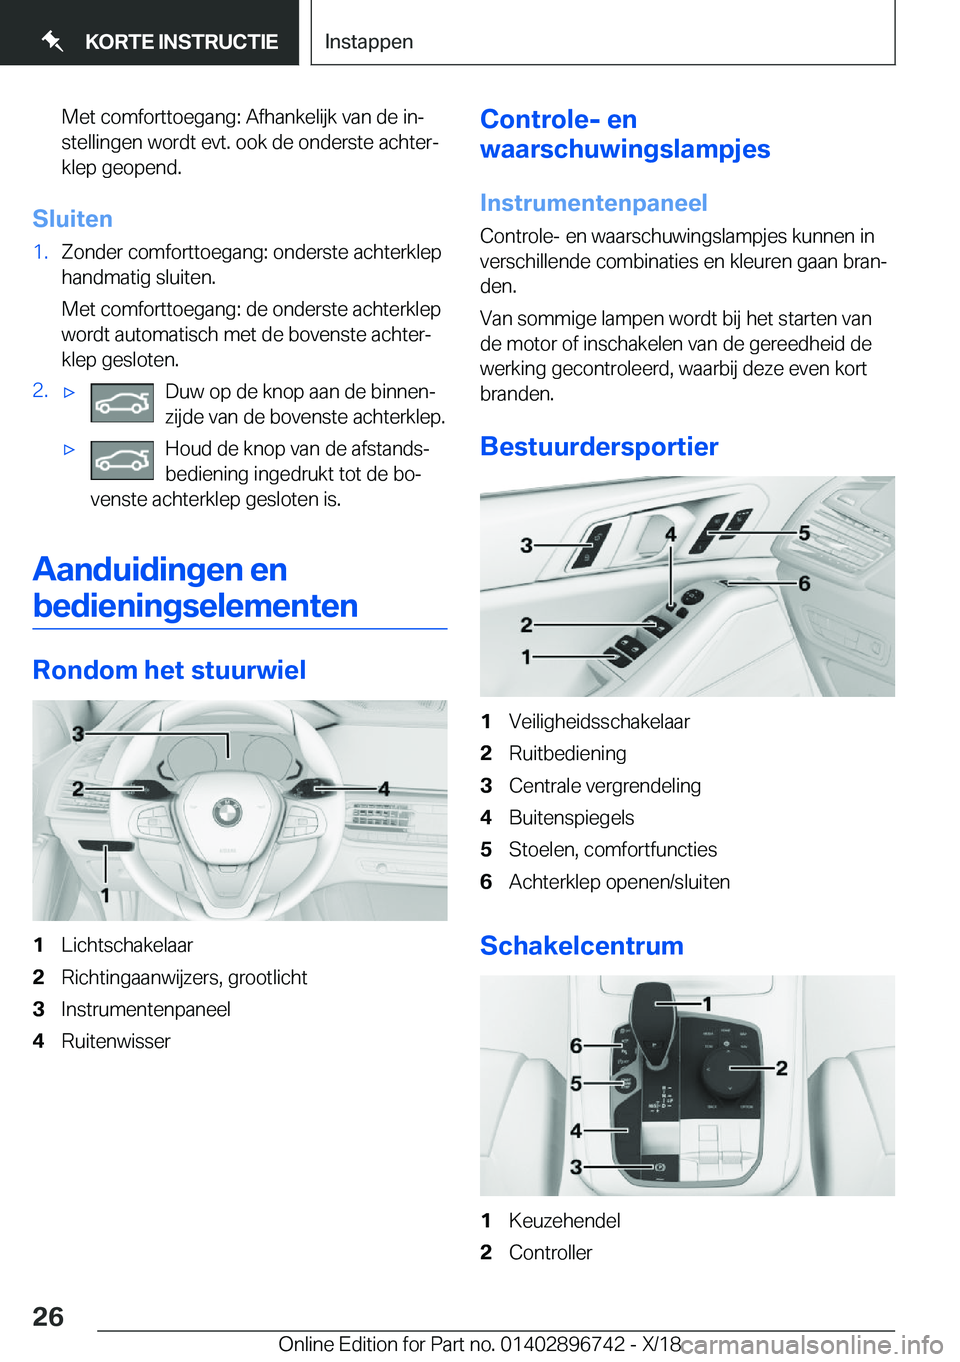 BMW X5 2019  Instructieboekjes (in Dutch) �M�e�t��c�o�m�f�o�r�t�t�o�e�g�a�n�g�:��A�f�h�a�n�k�e�l�i�j�k��v�a�n��d�e��i�nj�s�t�e�l�l�i�n�g�e�n��w�o�r�d�t��e�v�t�.��o�o�k��d�e��o�n�d�e�r�s�t�e��a�c�h�t�e�rj�k�l�e�p��g�e�o�p�e�n�d�.